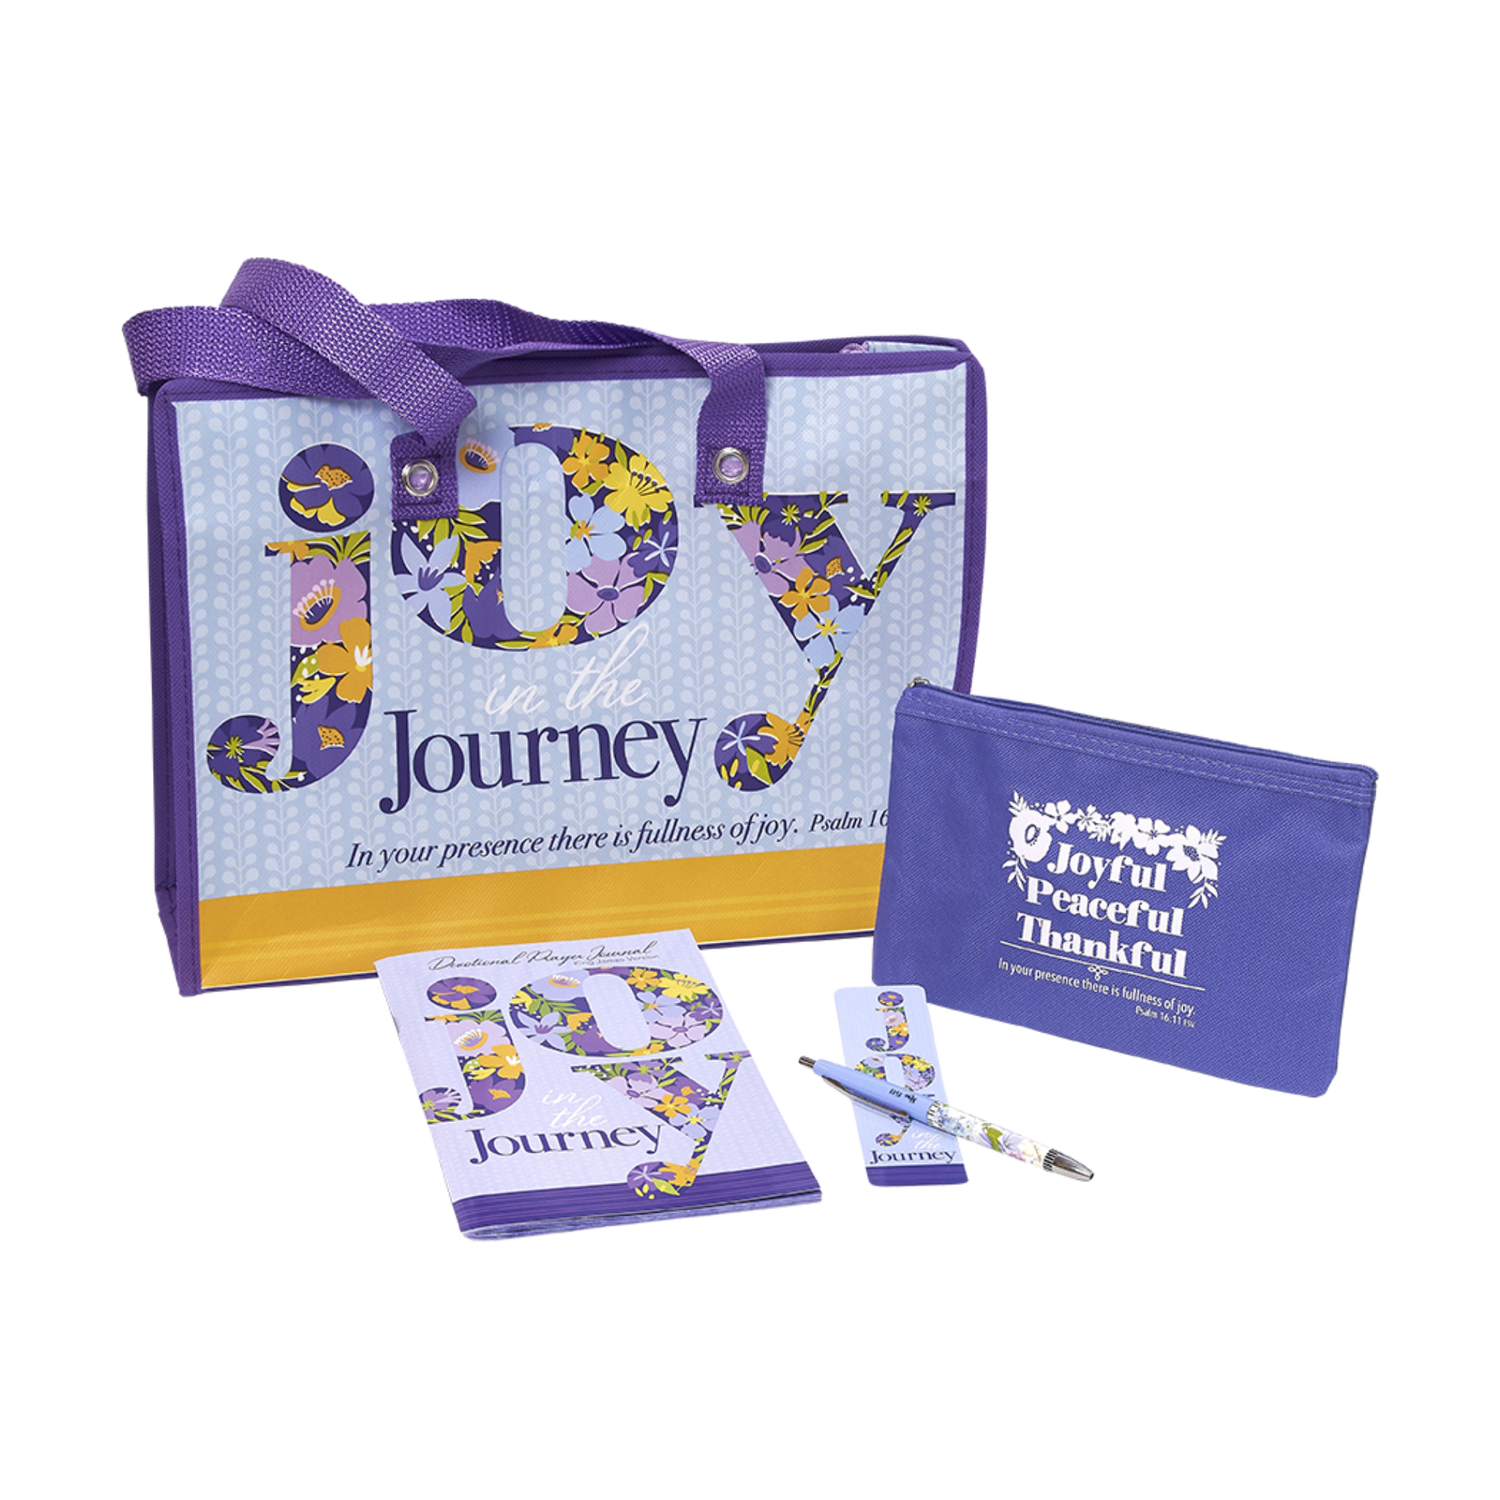 KJV Christian Woman's Gift Set - Joy in the Journey